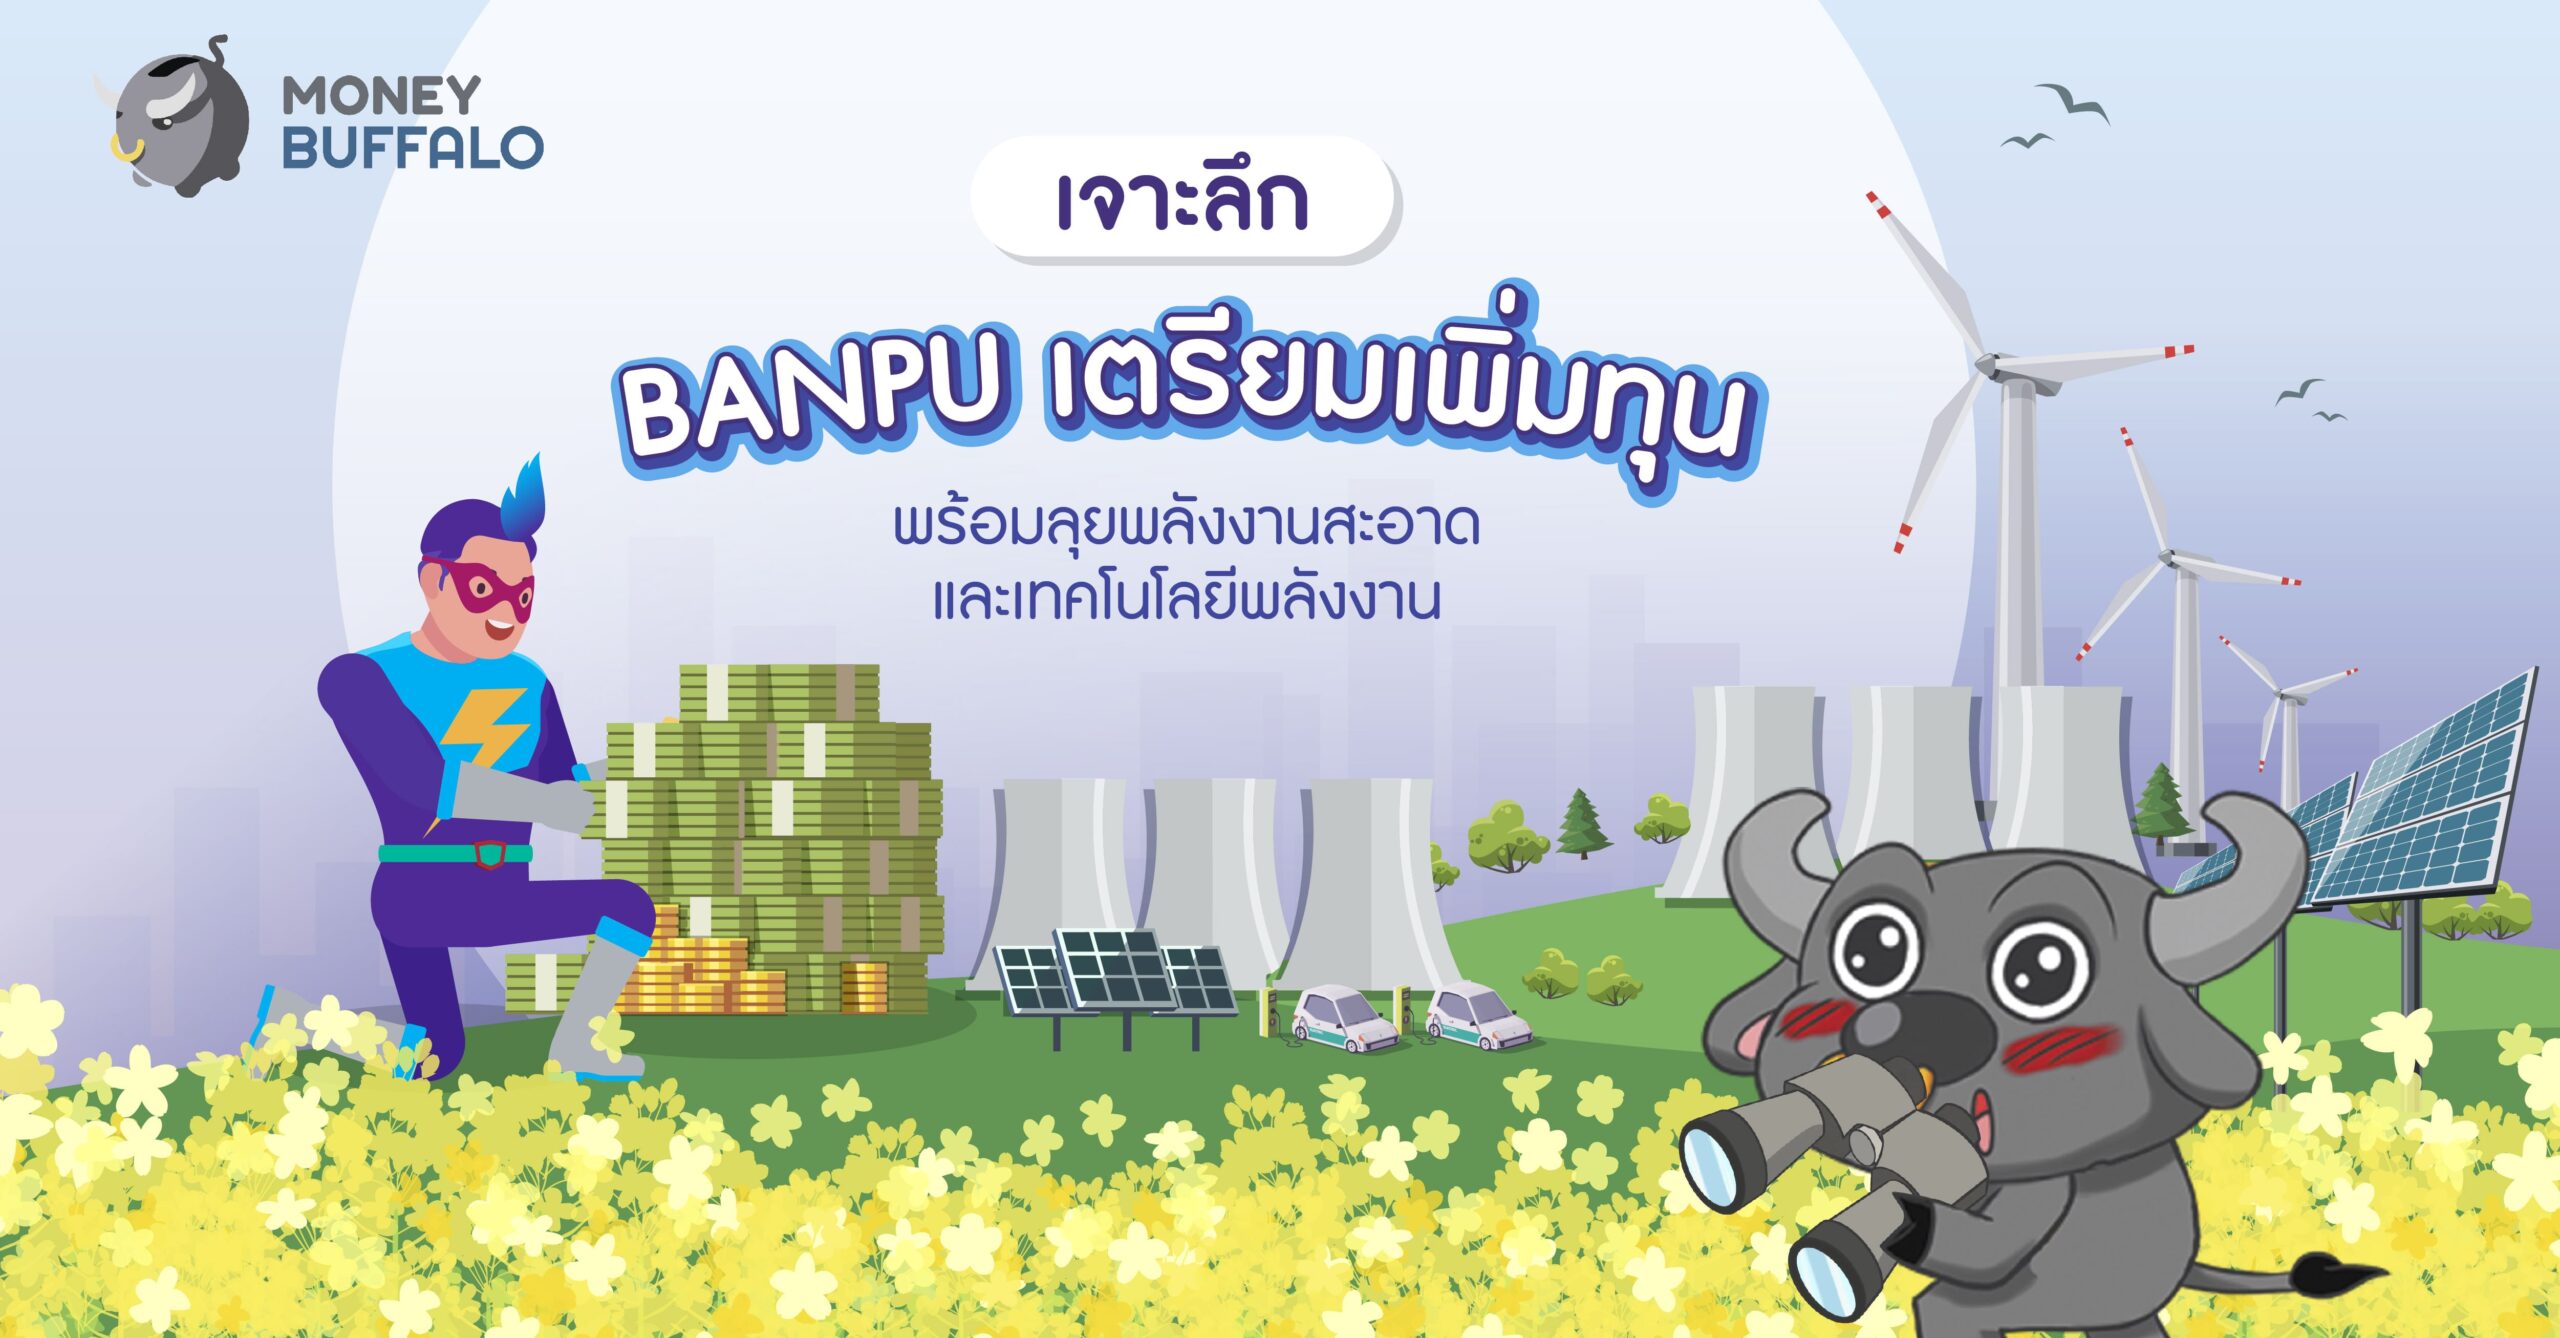 [เจาะลึก] "BANPU เตรียมเพิ่มทุน" พร้อมลุยพลังงานสะอาดและเทคโนโลยีพลังงาน